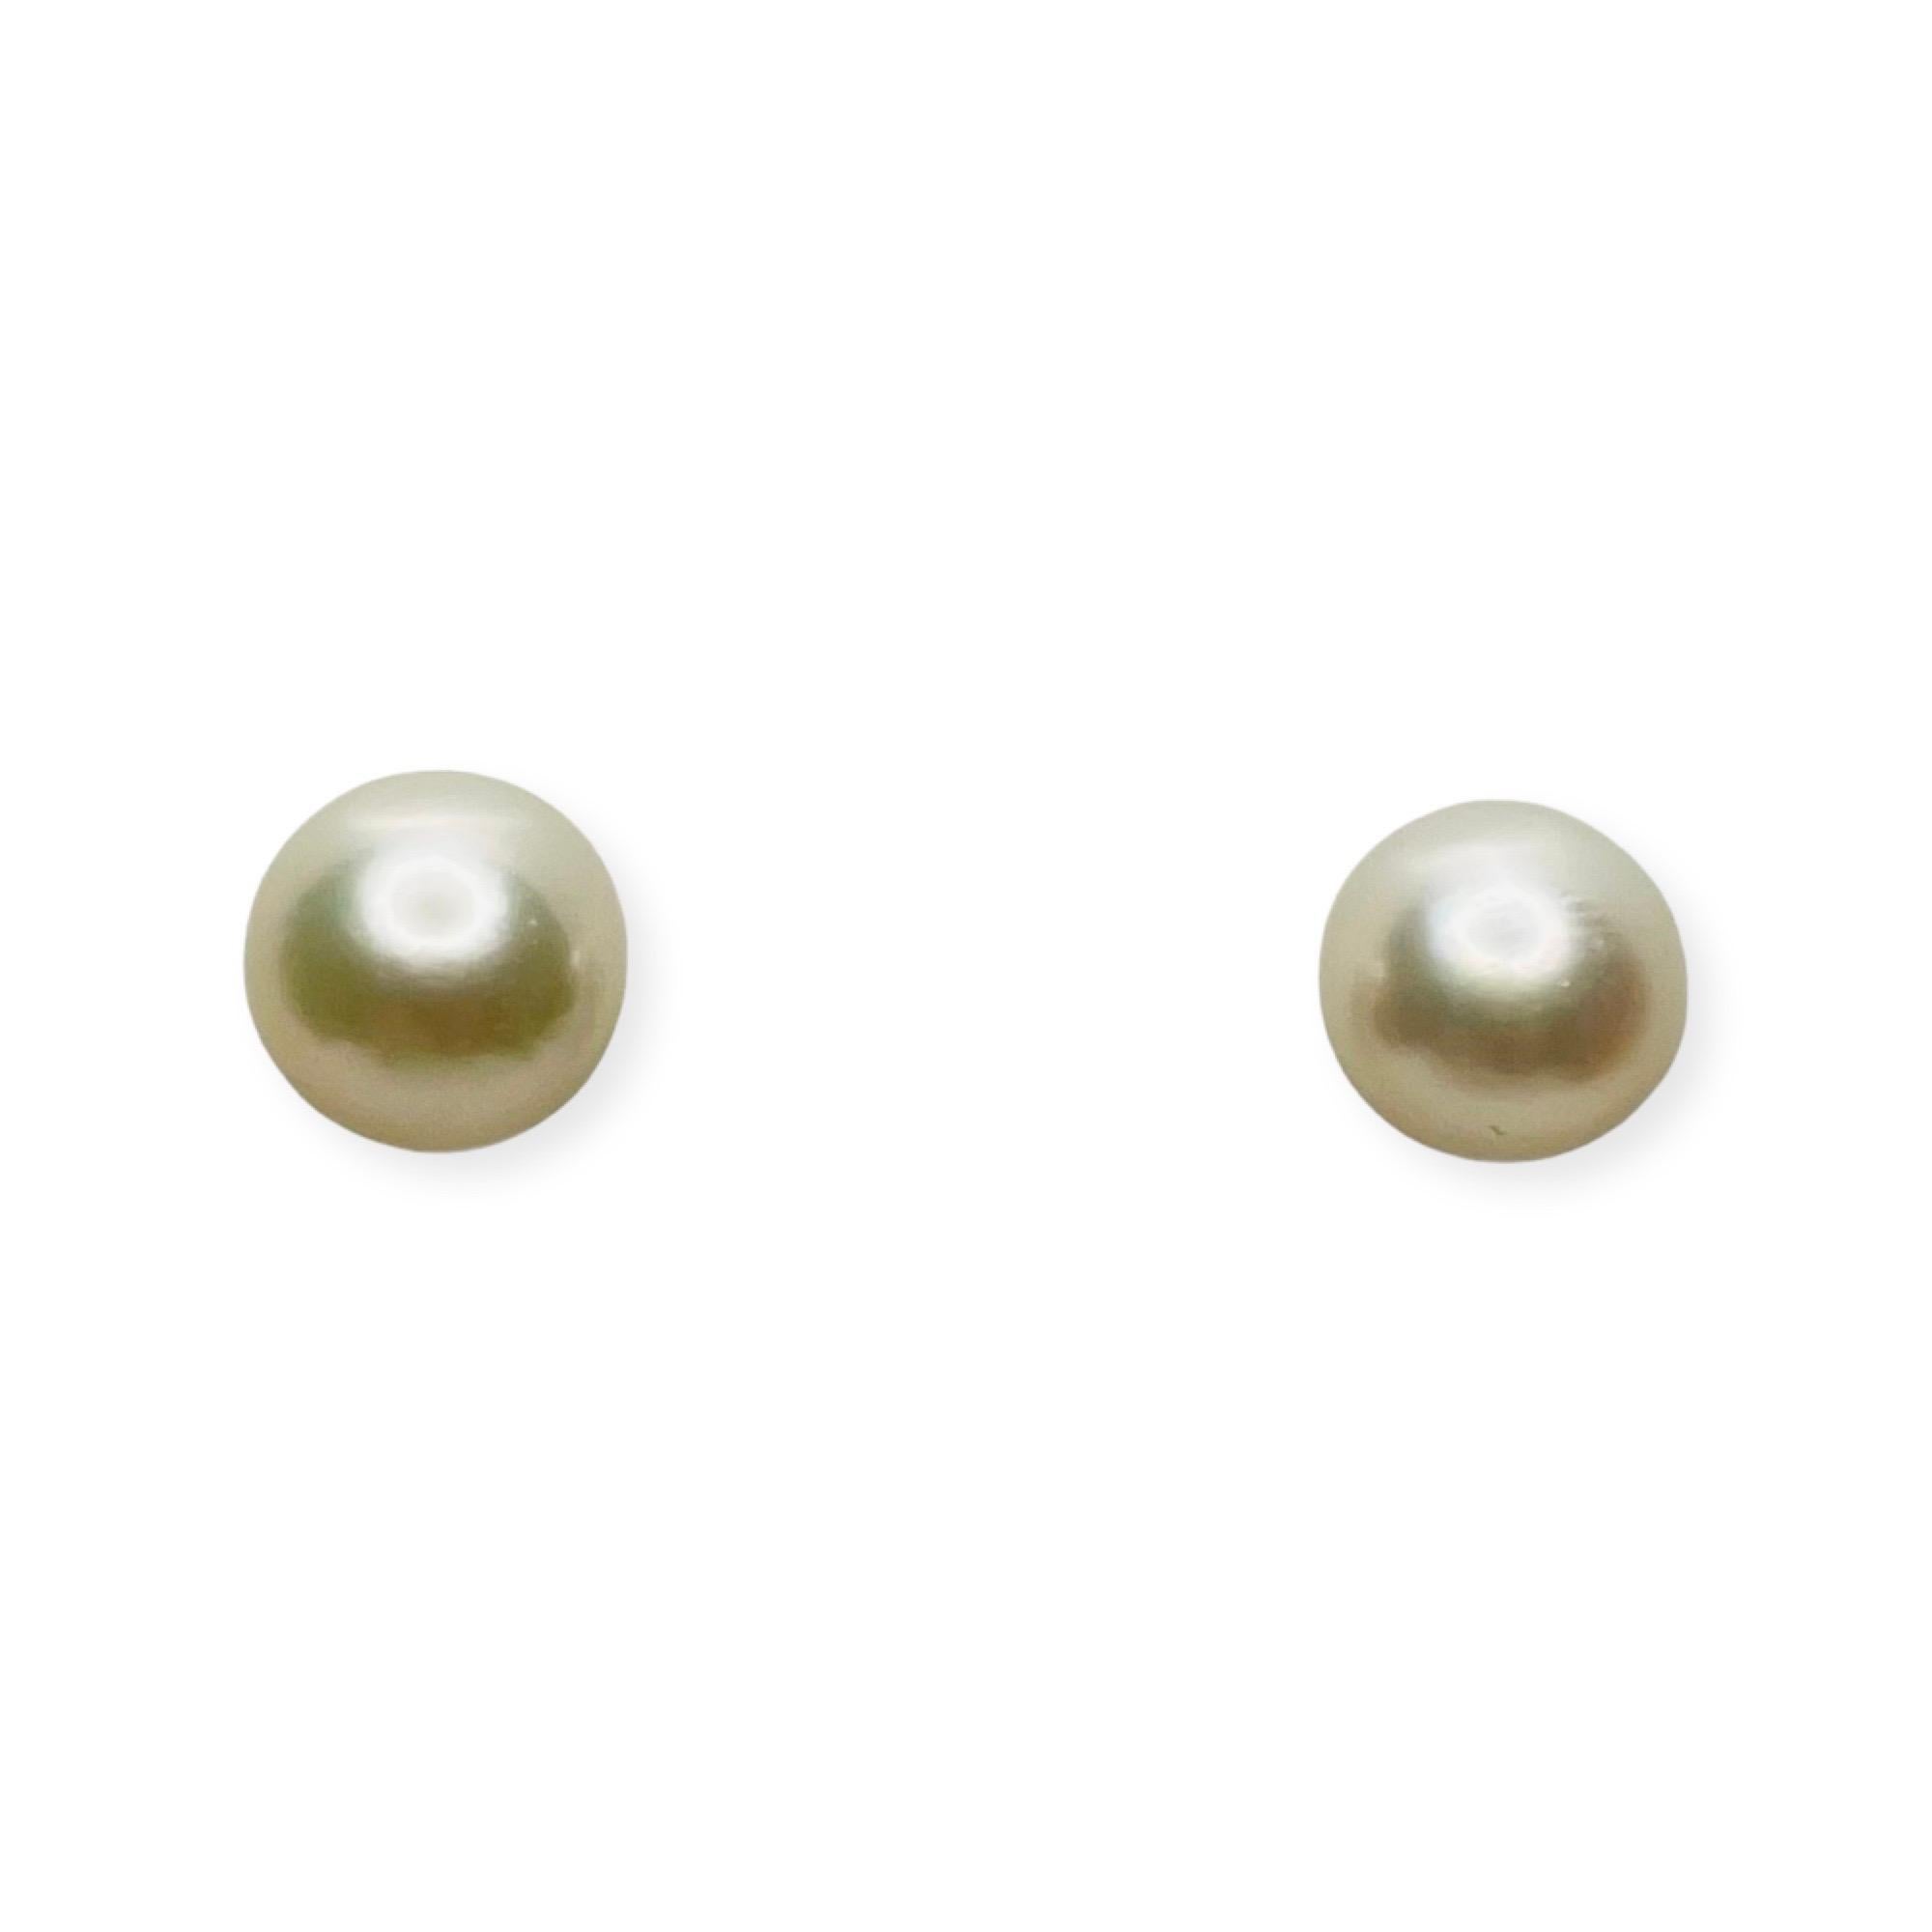 18K Gelbgold gezüchtete japanische Akoya-Perlen-Ohrringe. Die Perlen sind 7,5 mm - 8,0 mm groß.  Die Perlen sind rund mit leichten Fehlern und einem hohen Glanz.  Sie sind gut aufeinander abgestimmt. Sie haben einen rosigen Unterton. Es handelt sich